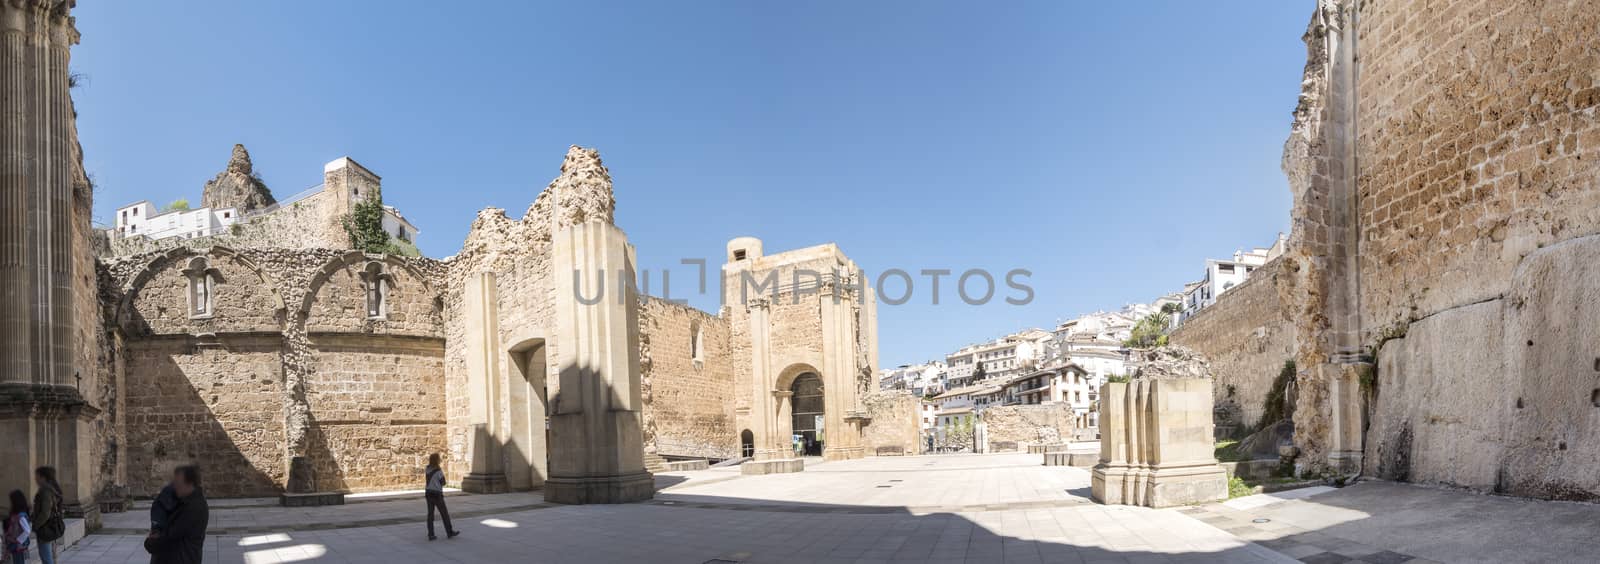 Santa Maria church ruins, Cazorla, Jaen, Spain by max8xam